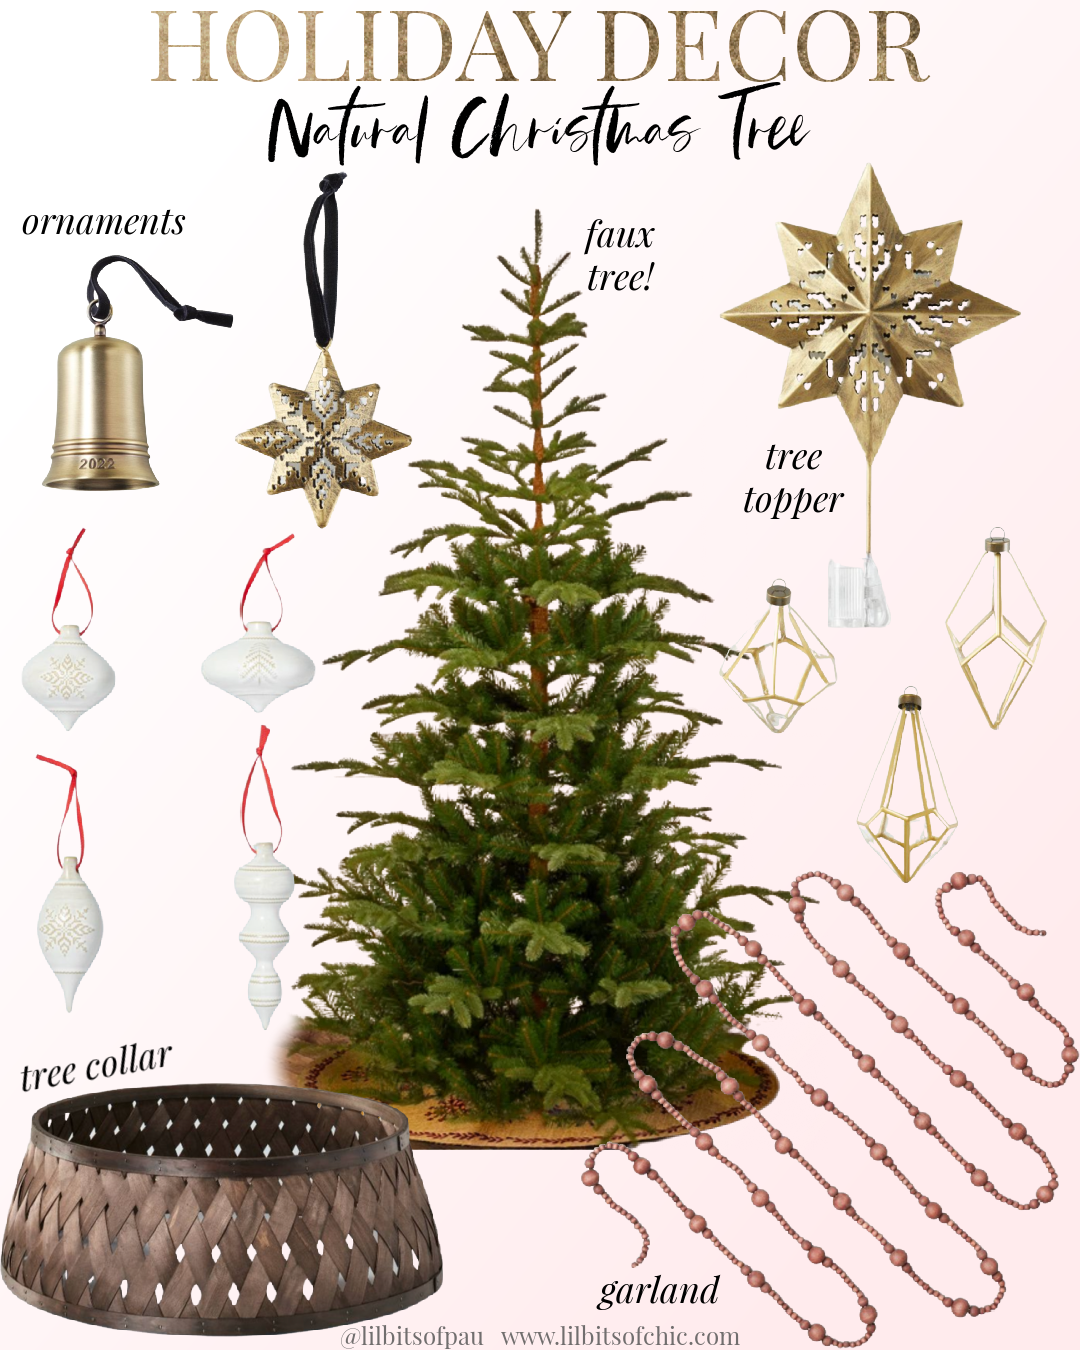 Natural Christmas tree decor idea, Holiday decor natural Christmas tree, wooden tree collar, Target holiday decor